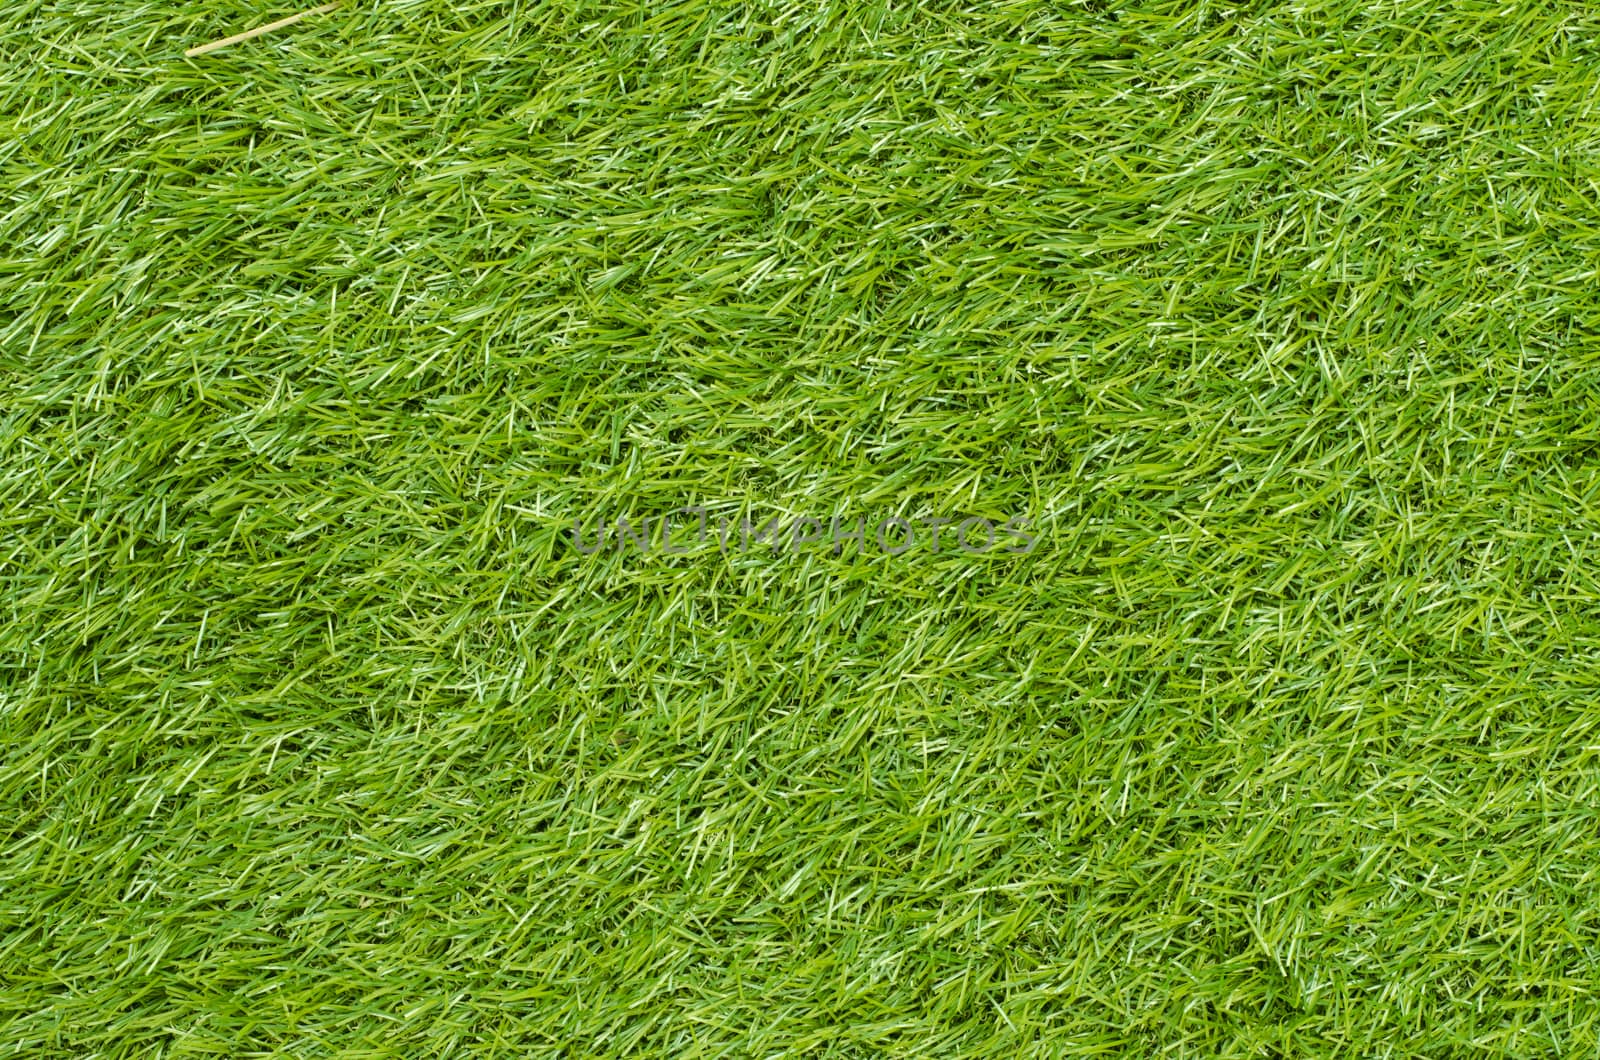 Green grass background by phochi